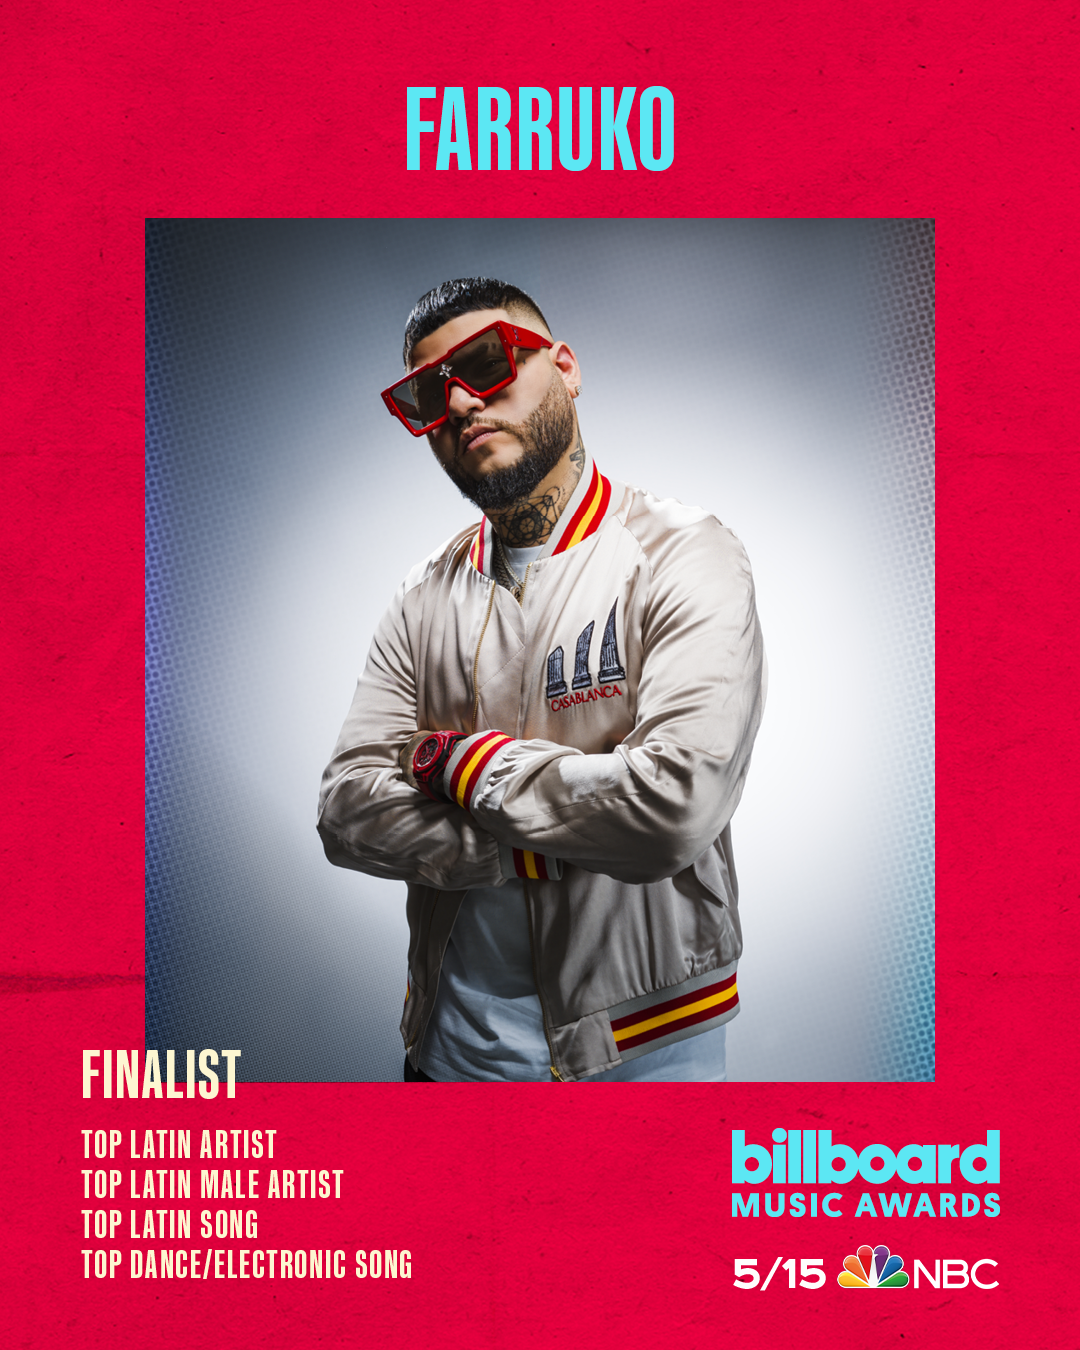 FARRUKO recibe nominaciones a premios Billboard Music Awards 2022